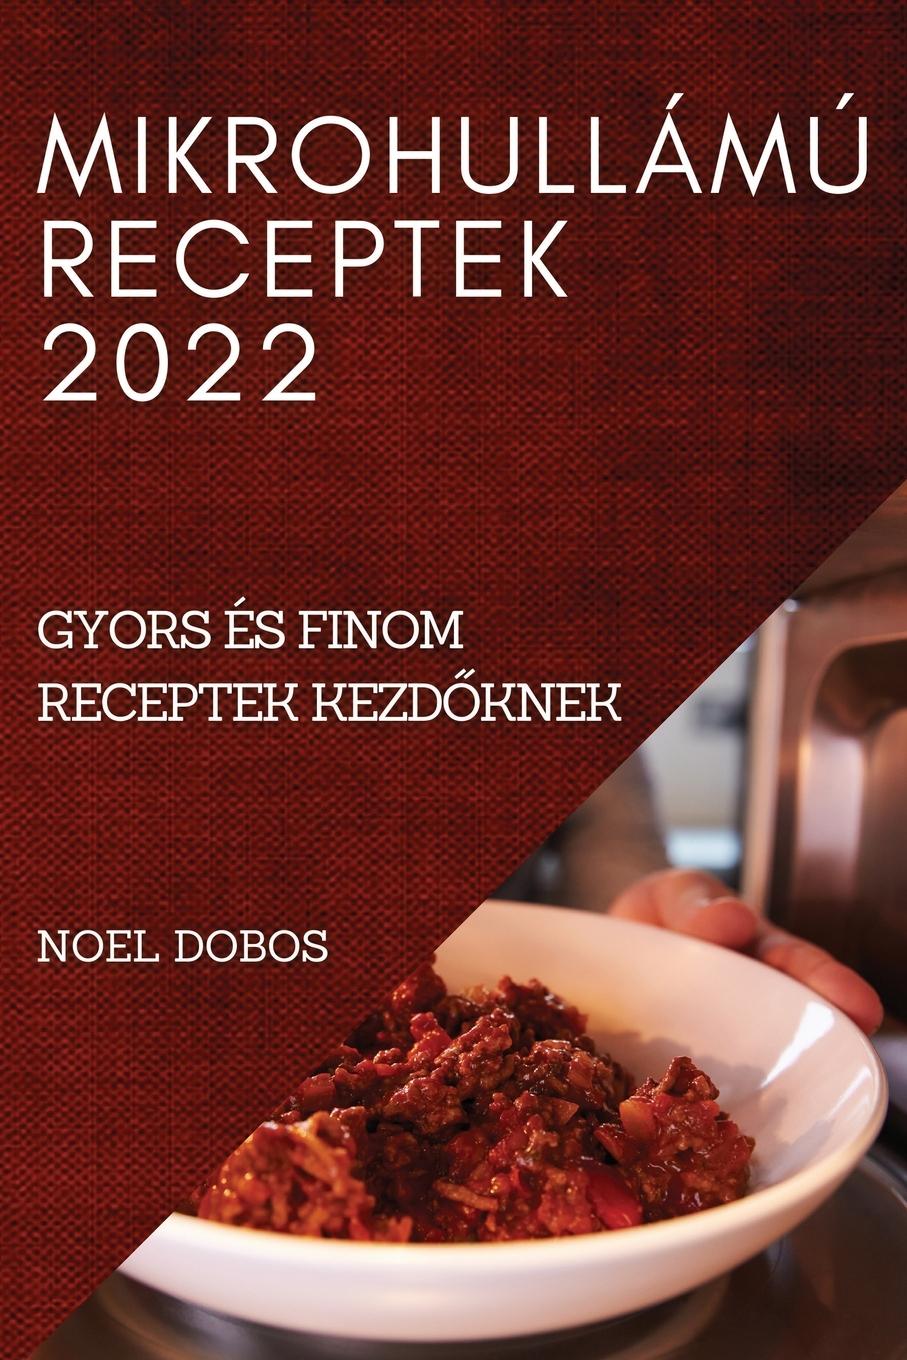 Kniha Mikrohullamu Receptek 2022 